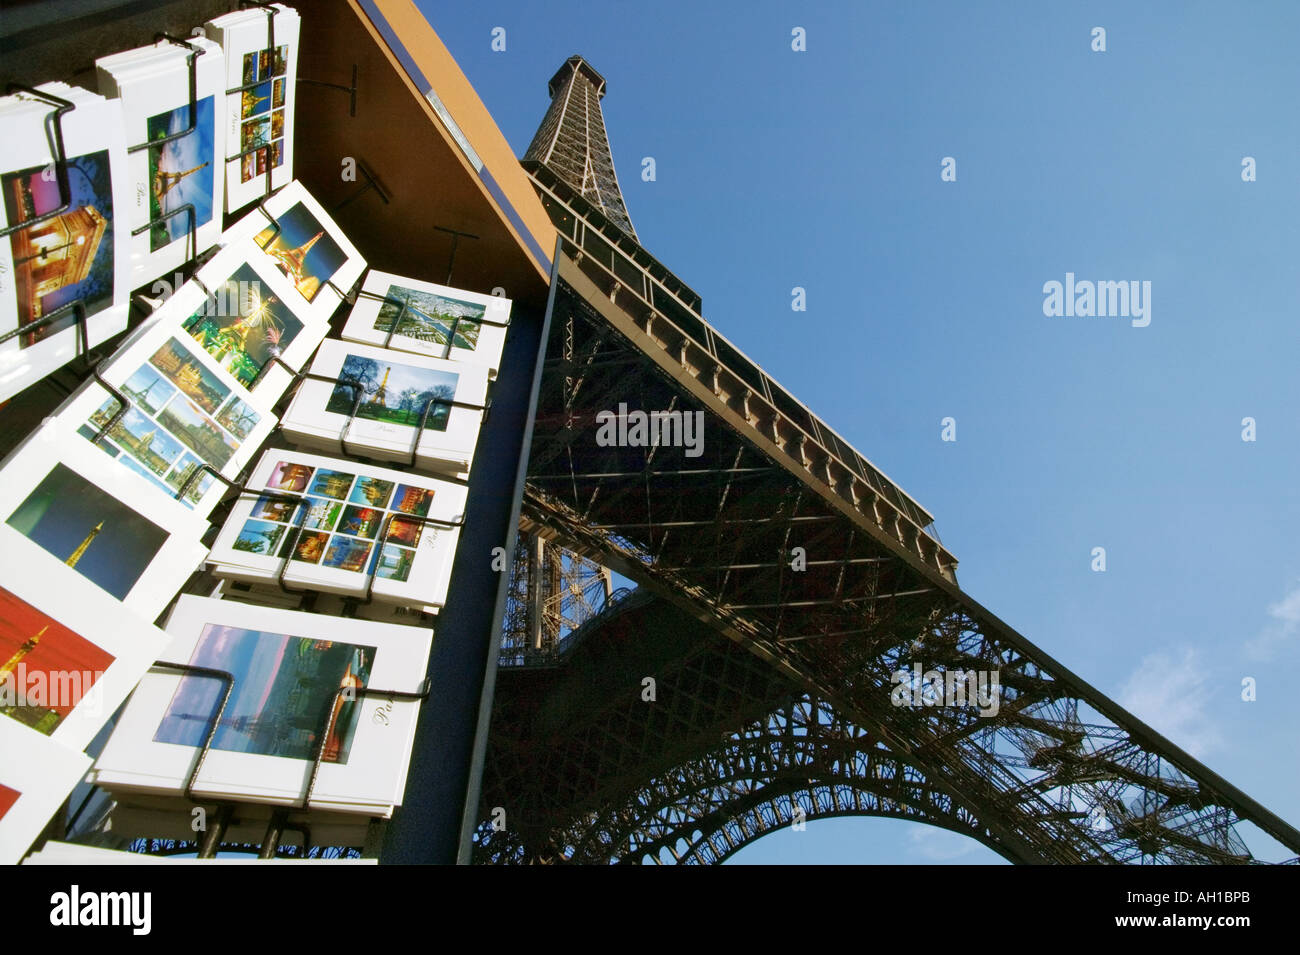 La Torre Eiffel - París - Francia Foto de stock